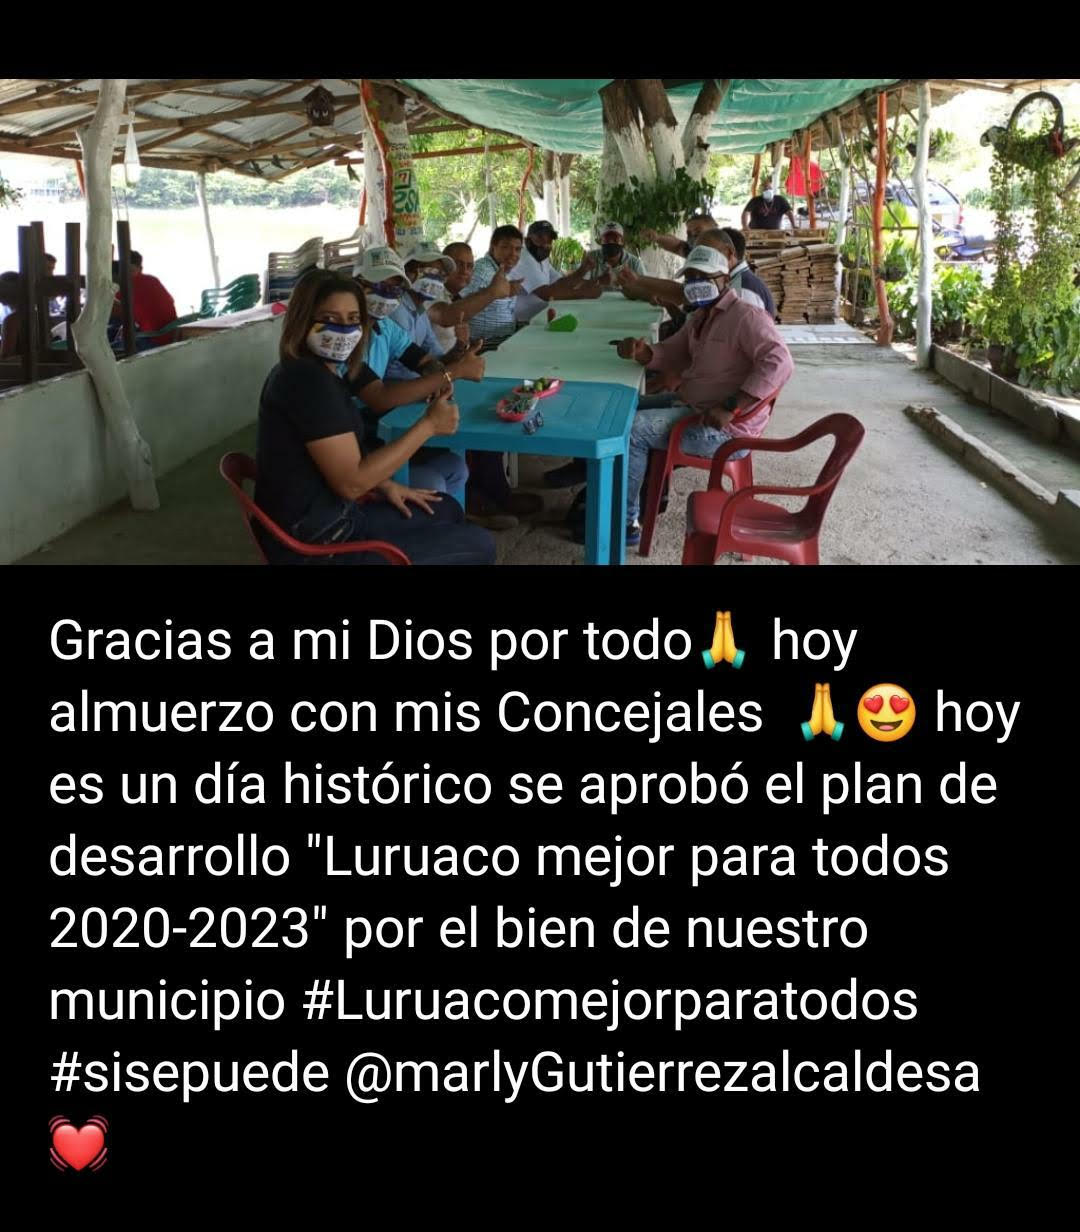 La alcaldesa de Luruaco en su publicación de Facebook.